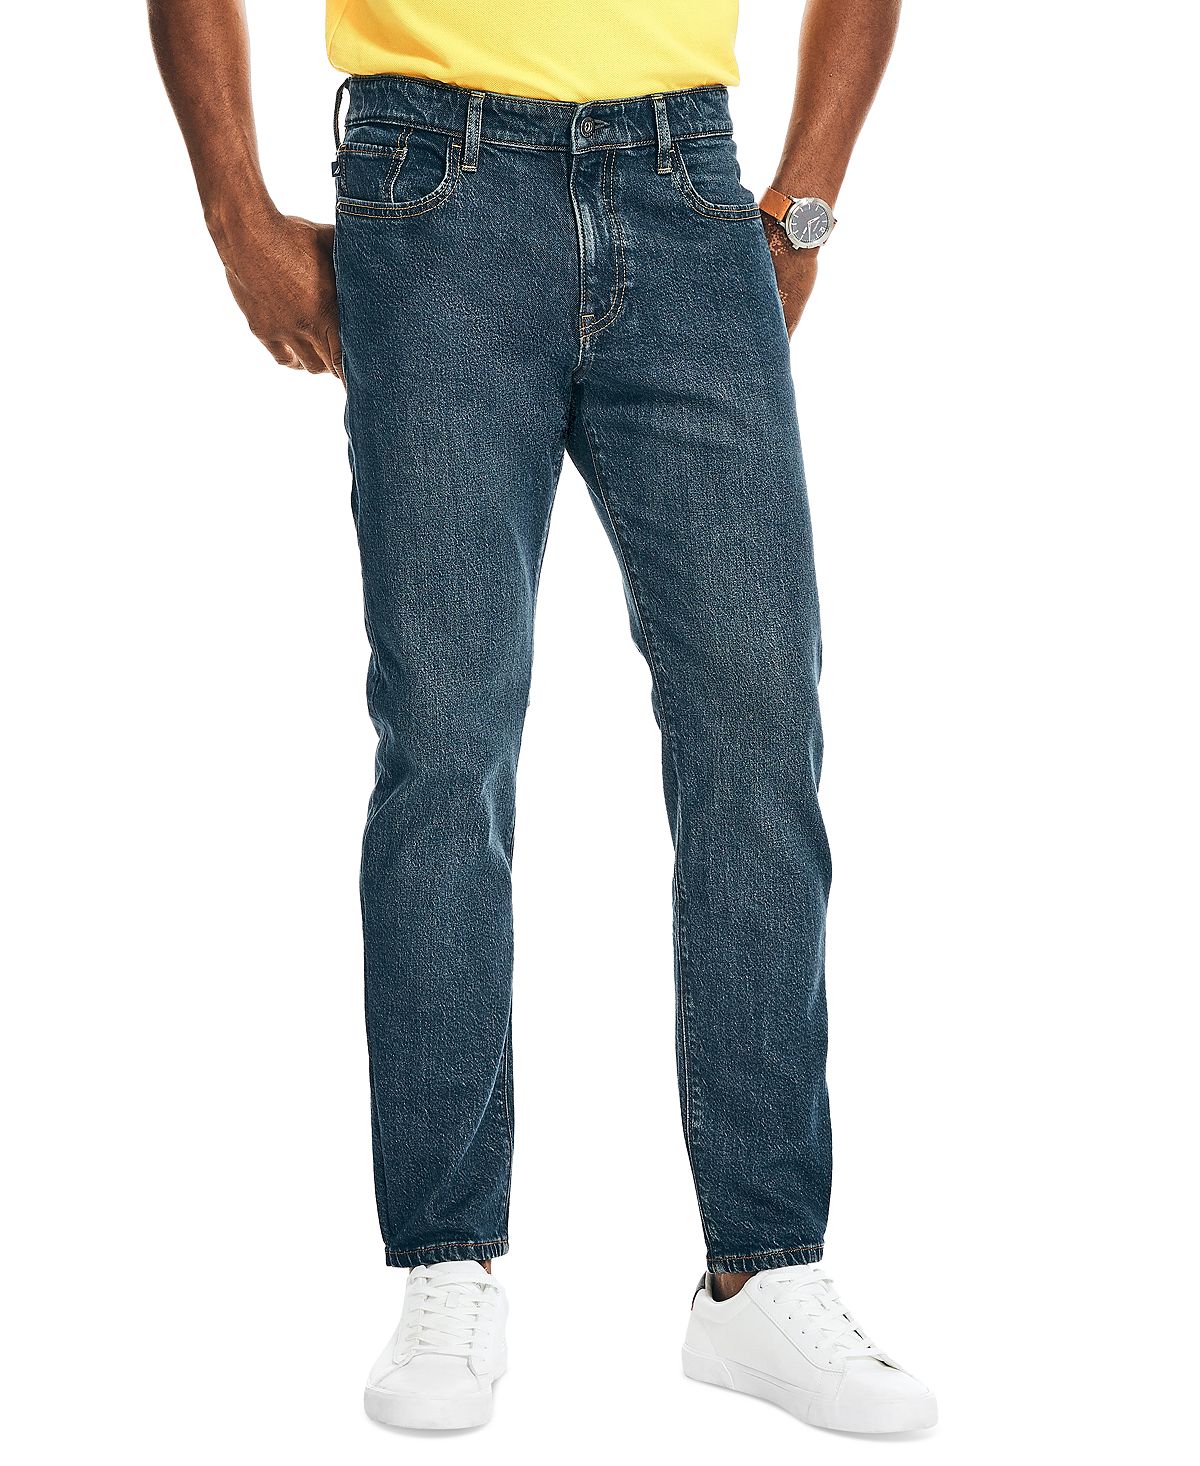 Мужские спортивные зауженные джинсы из эластичного денима с 5 карманами Nautica, мульти узкие джинсы для беременных женщин на животе узкие брюки для беременных удобные эластичные брюки с карманами облегающие джинсы бойфренды